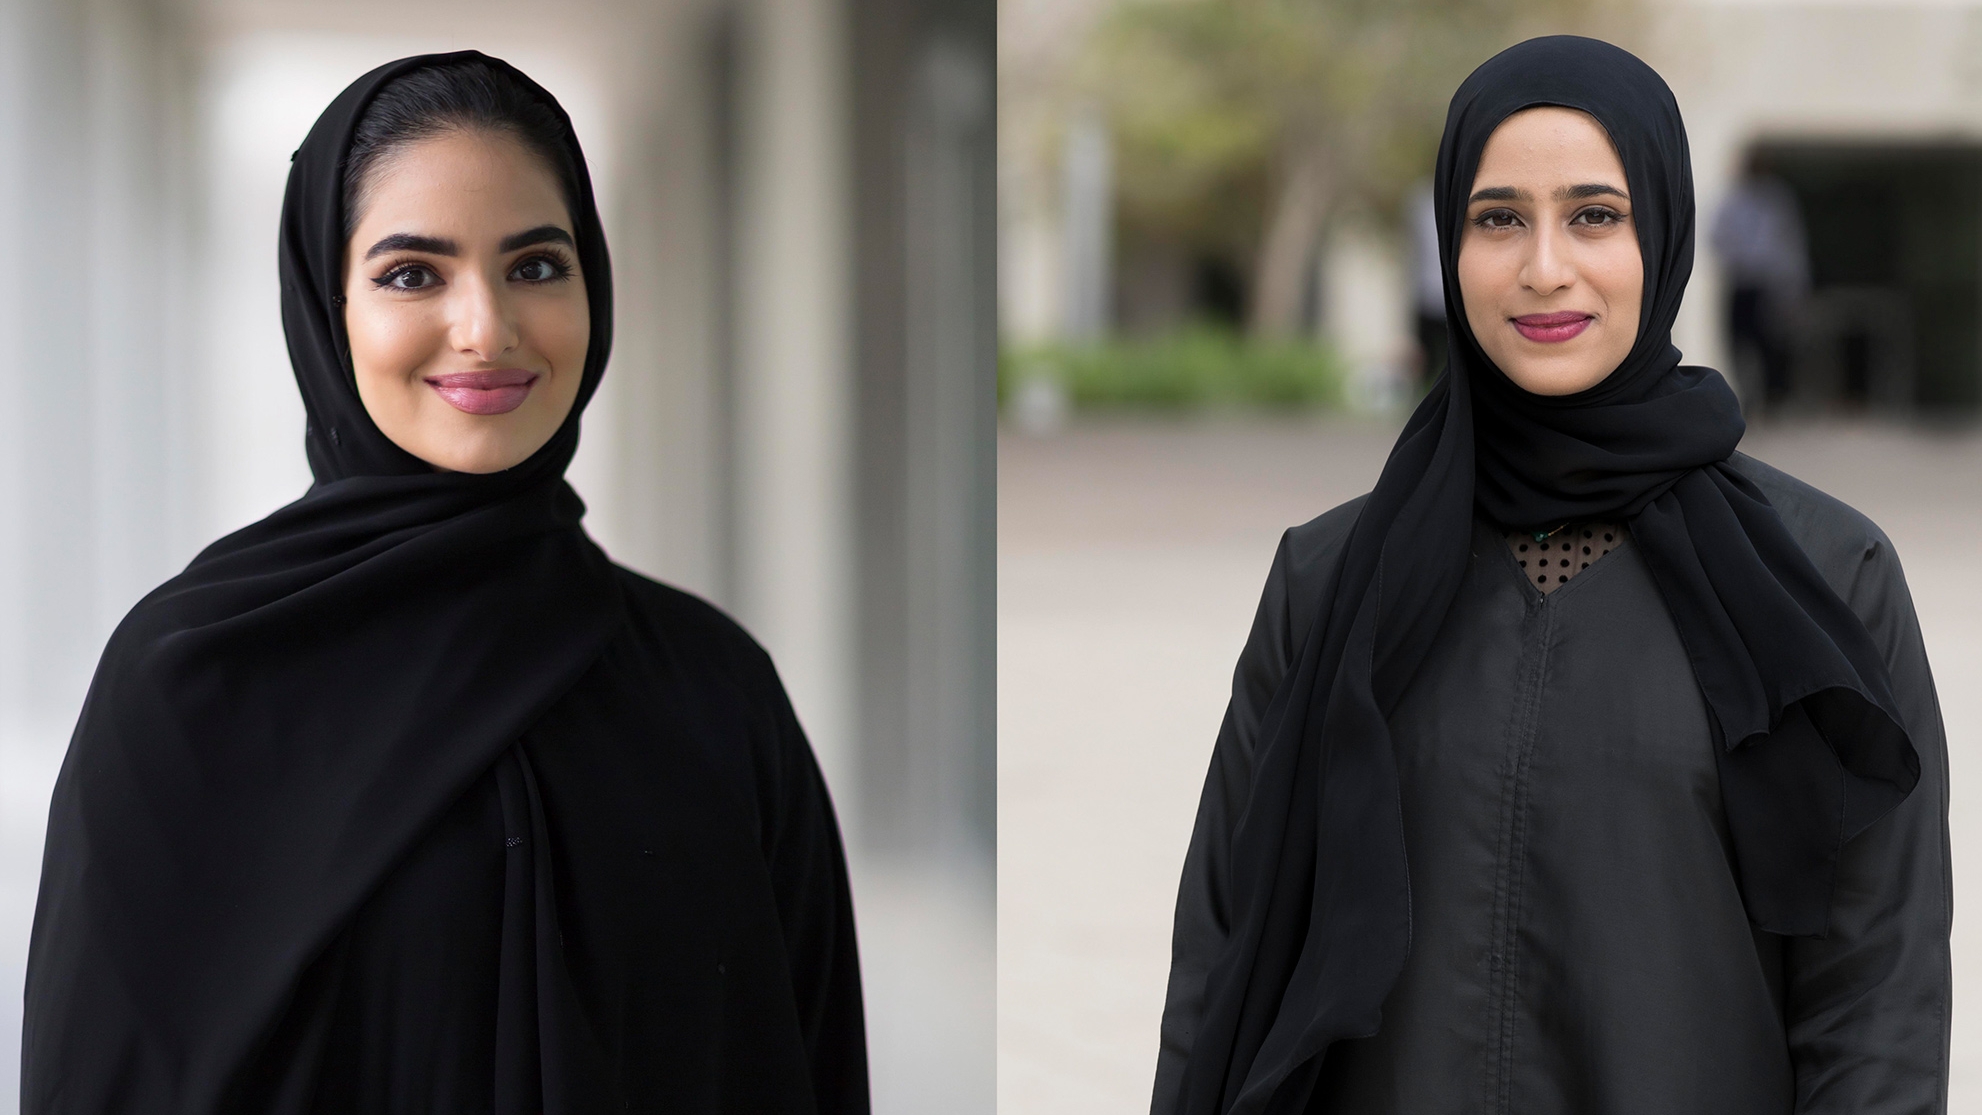  NYU Abu Dhabi's Two 2019 UAE Rhodes Scholars